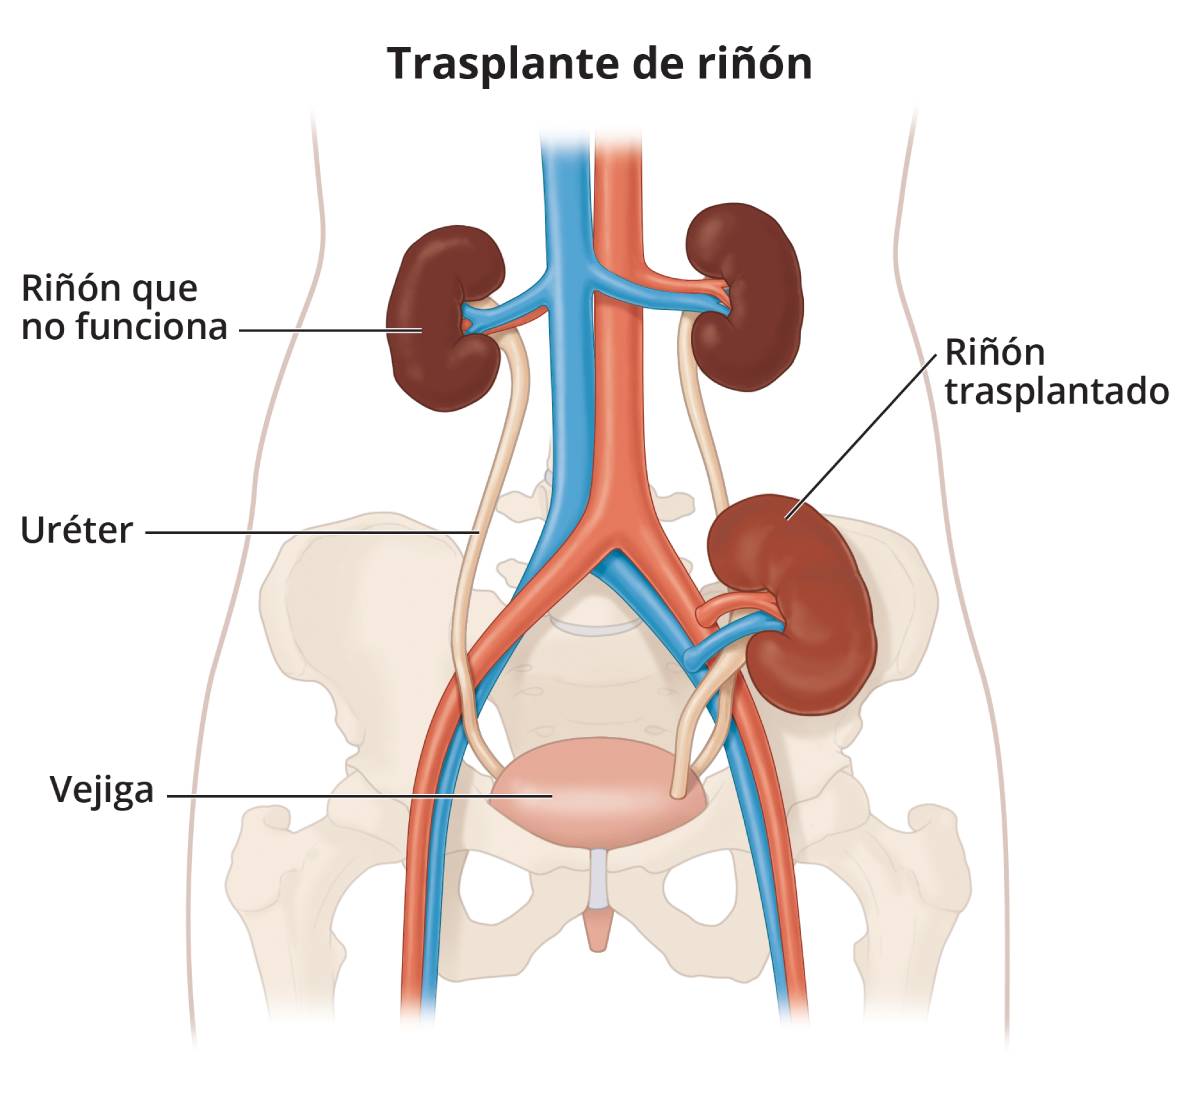 Dibujo de un riñón y uréter trasplantados en relación con el tracto urinario y el suministro de sangre.